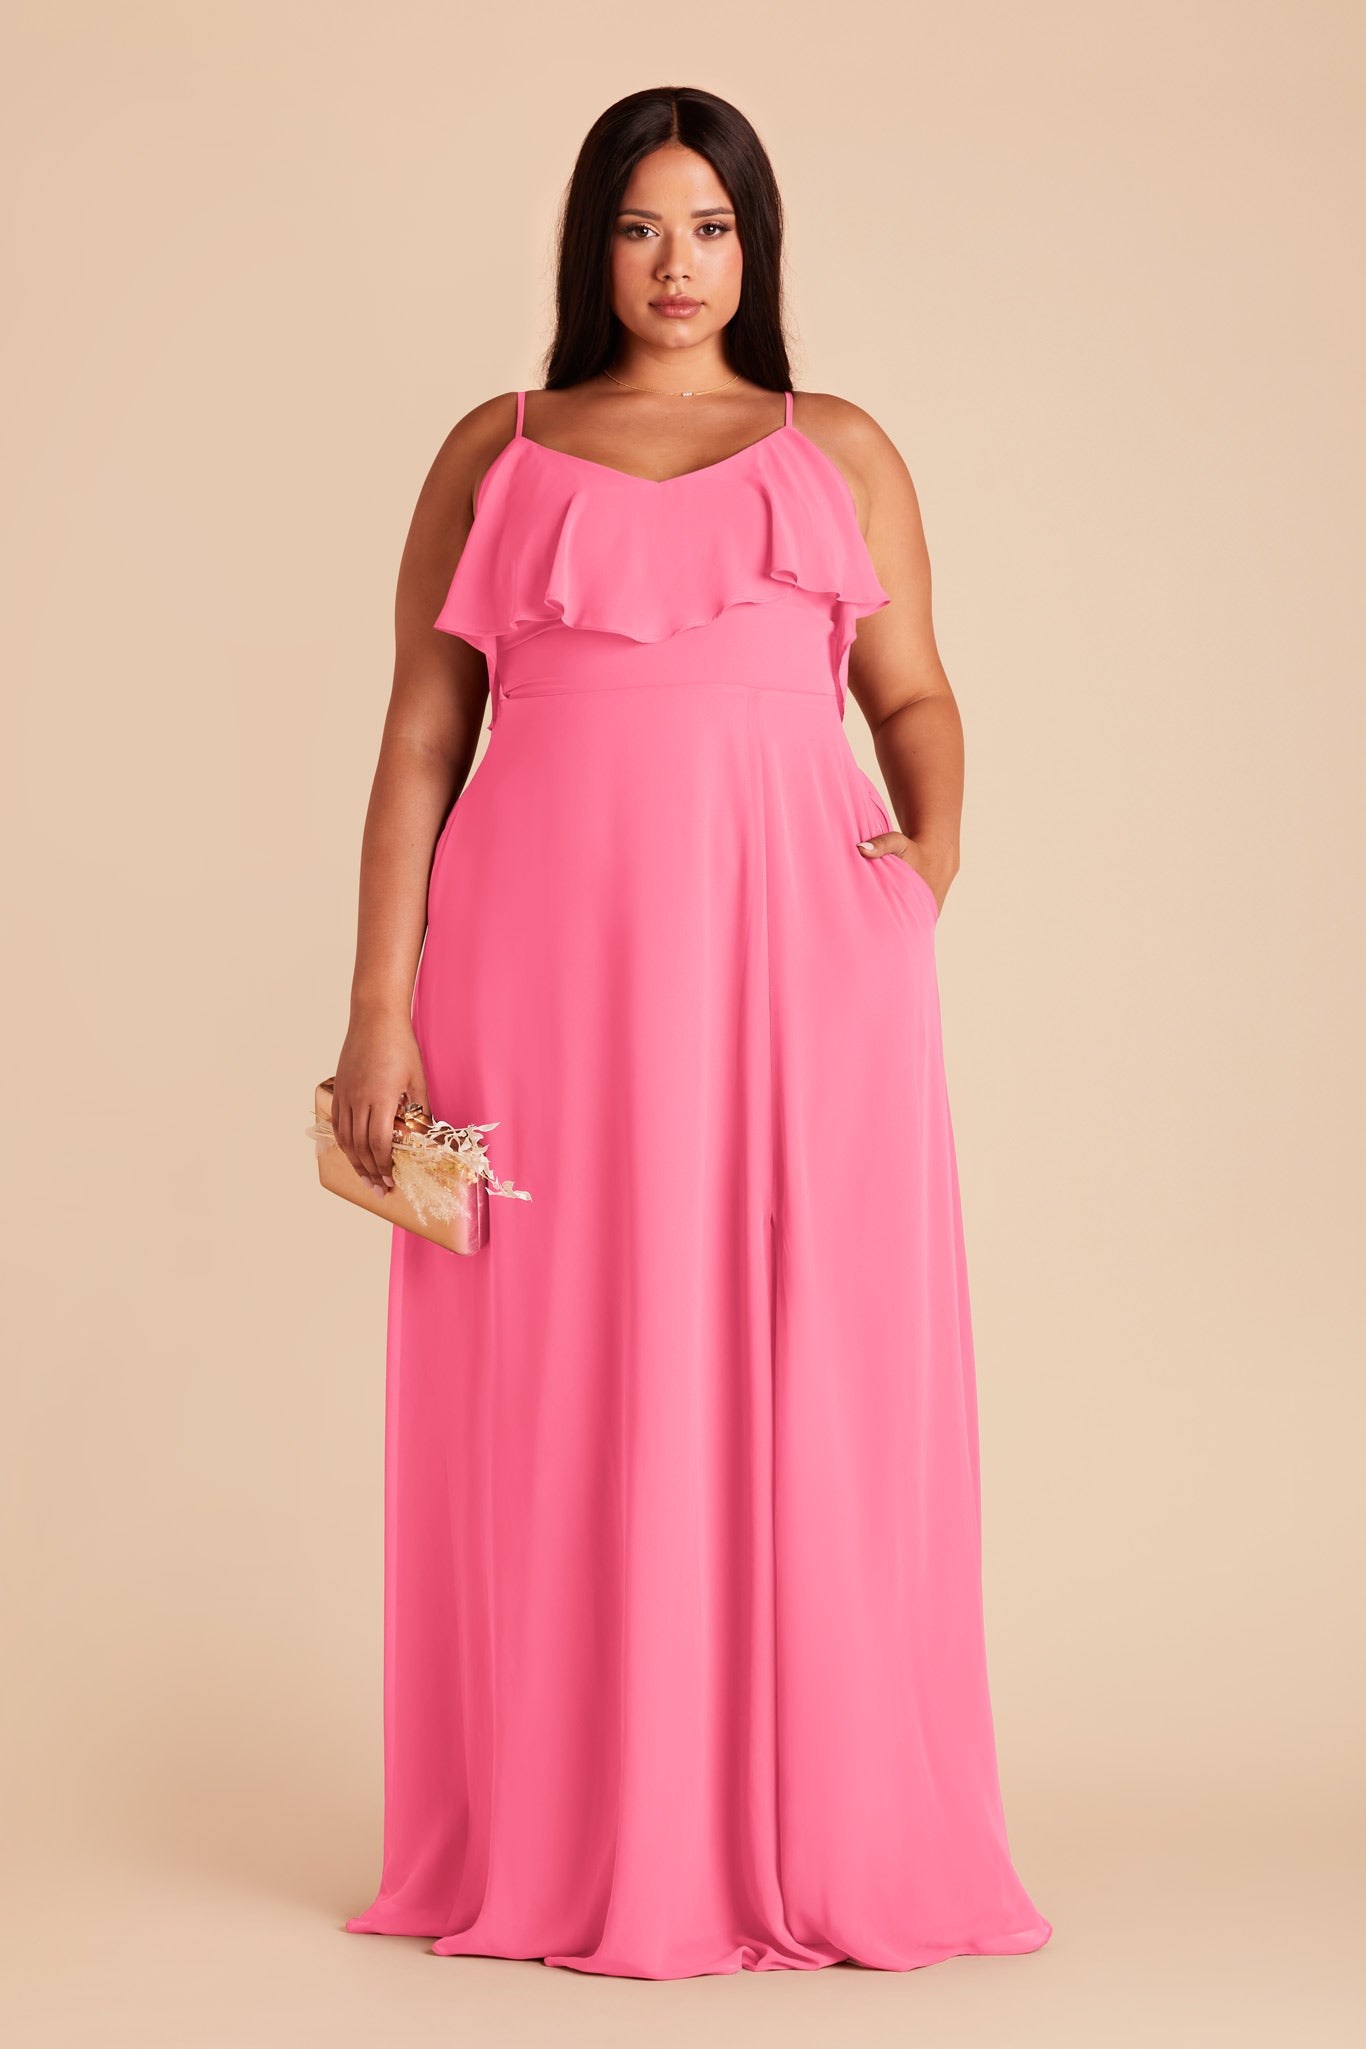 Bon Bon Pink Jane Convertible Dress by Birdy Grey